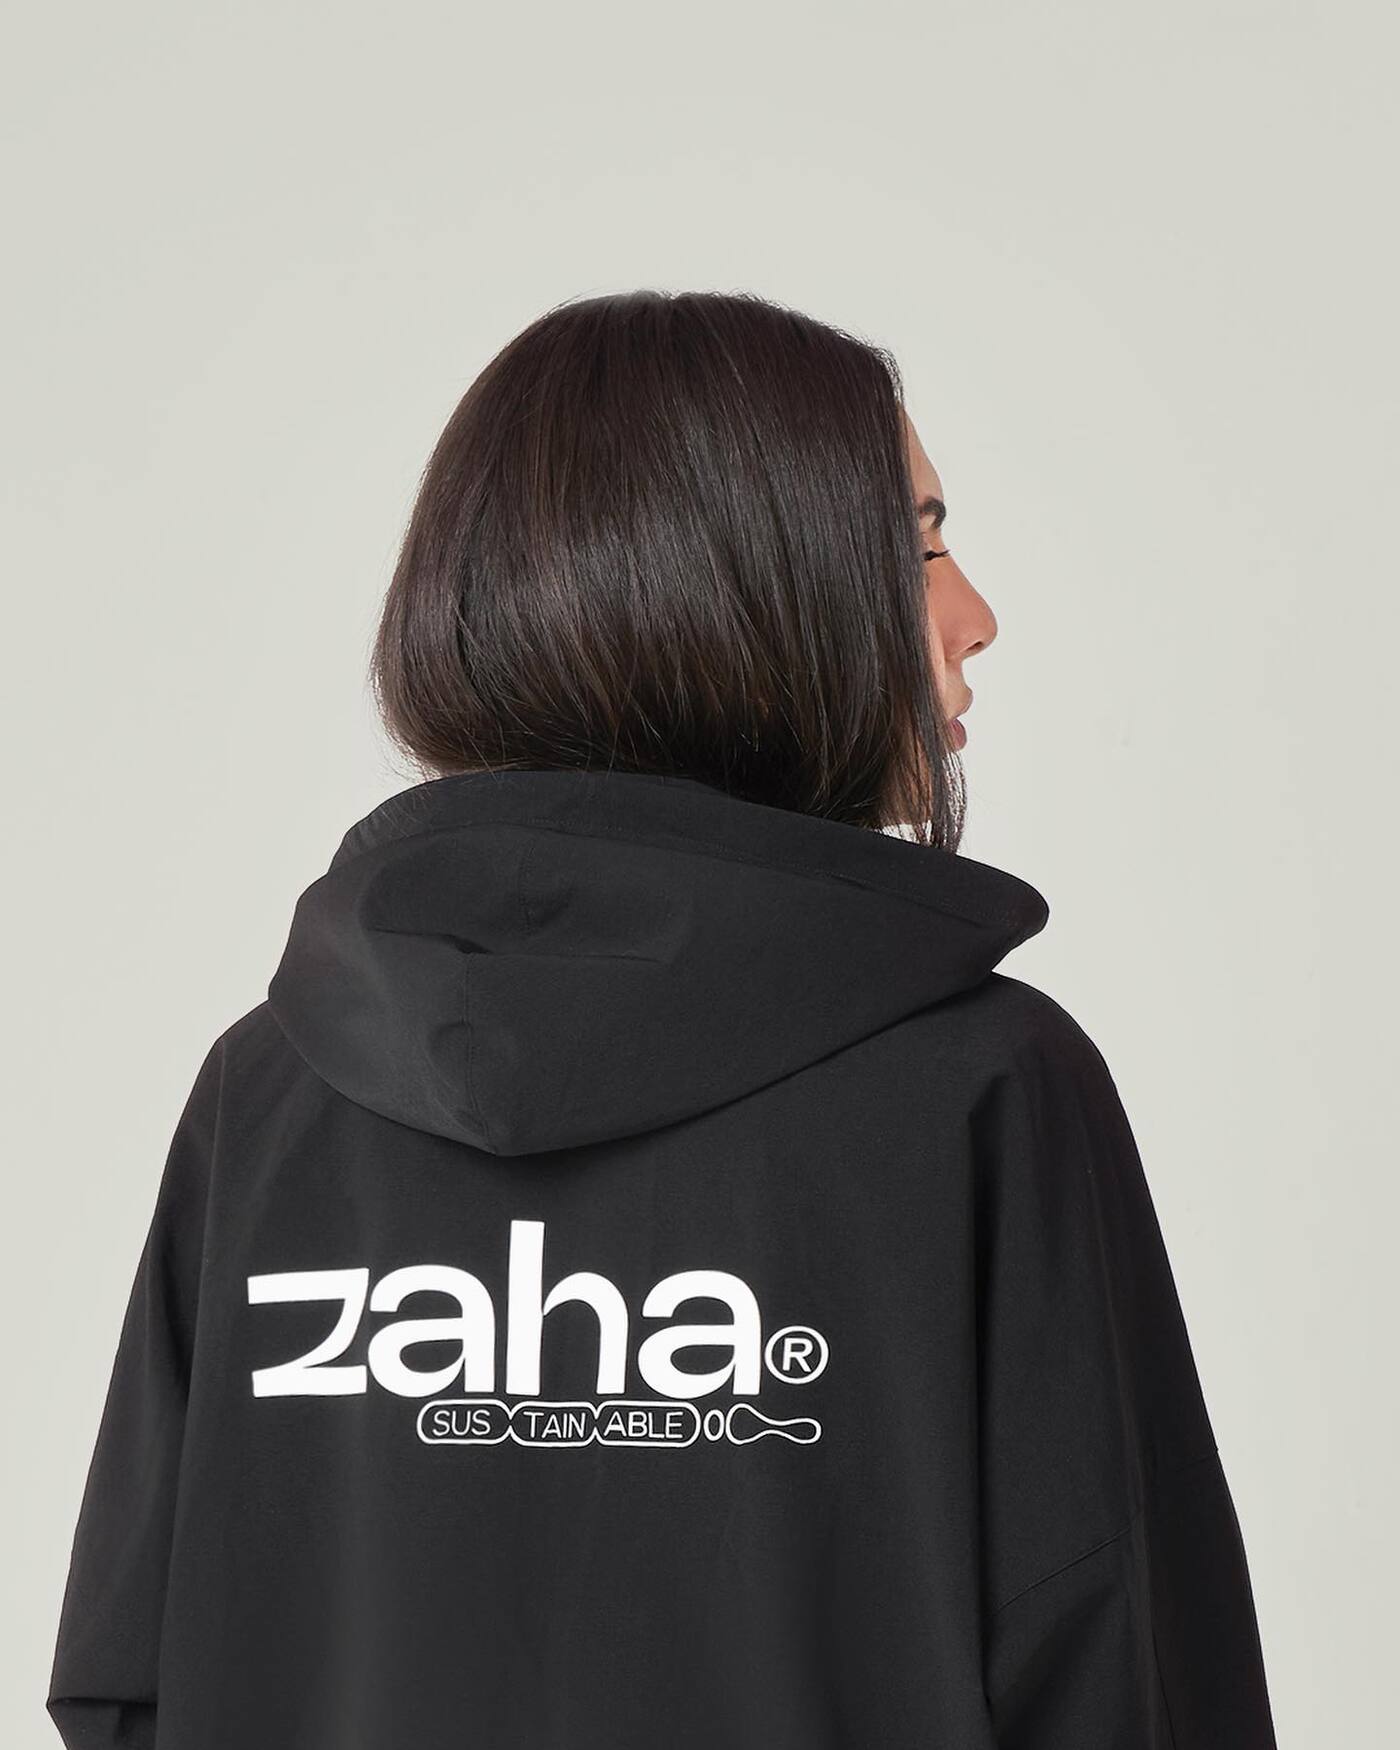 Zaha Clothing - Fonts In Use